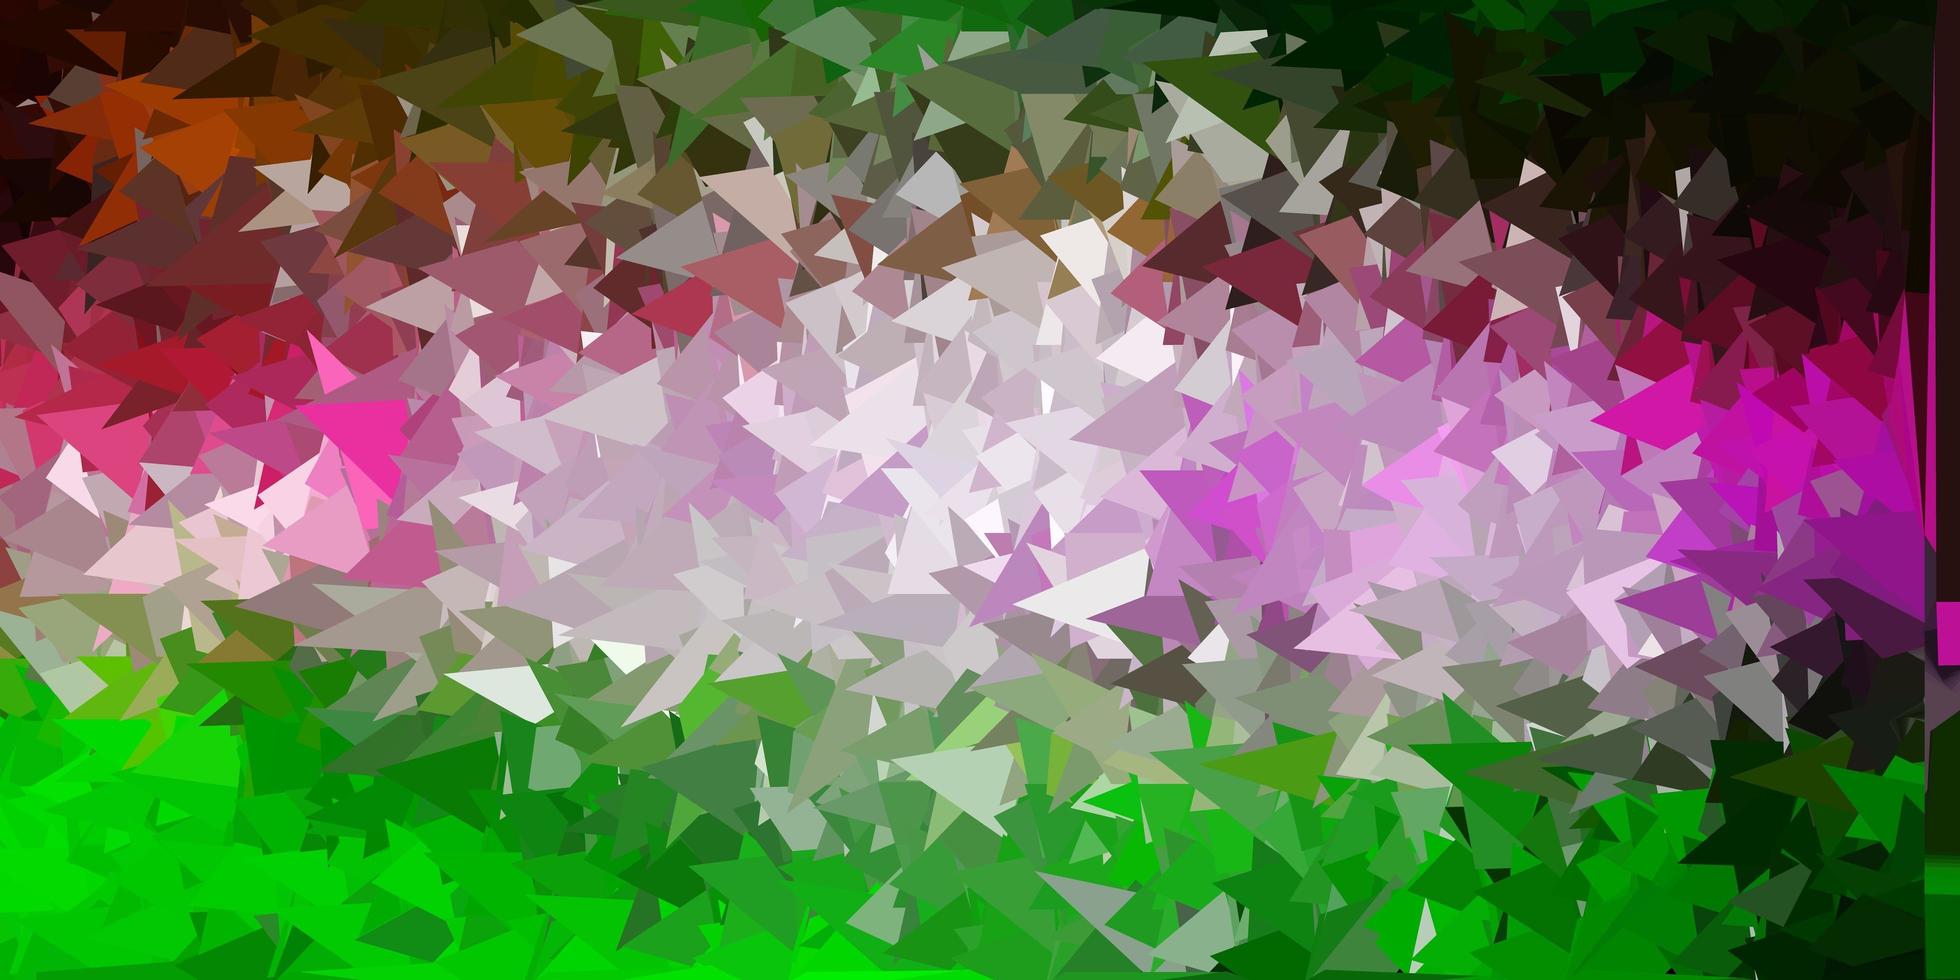 struttura astratta del triangolo di vettore rosa chiaro, verde.